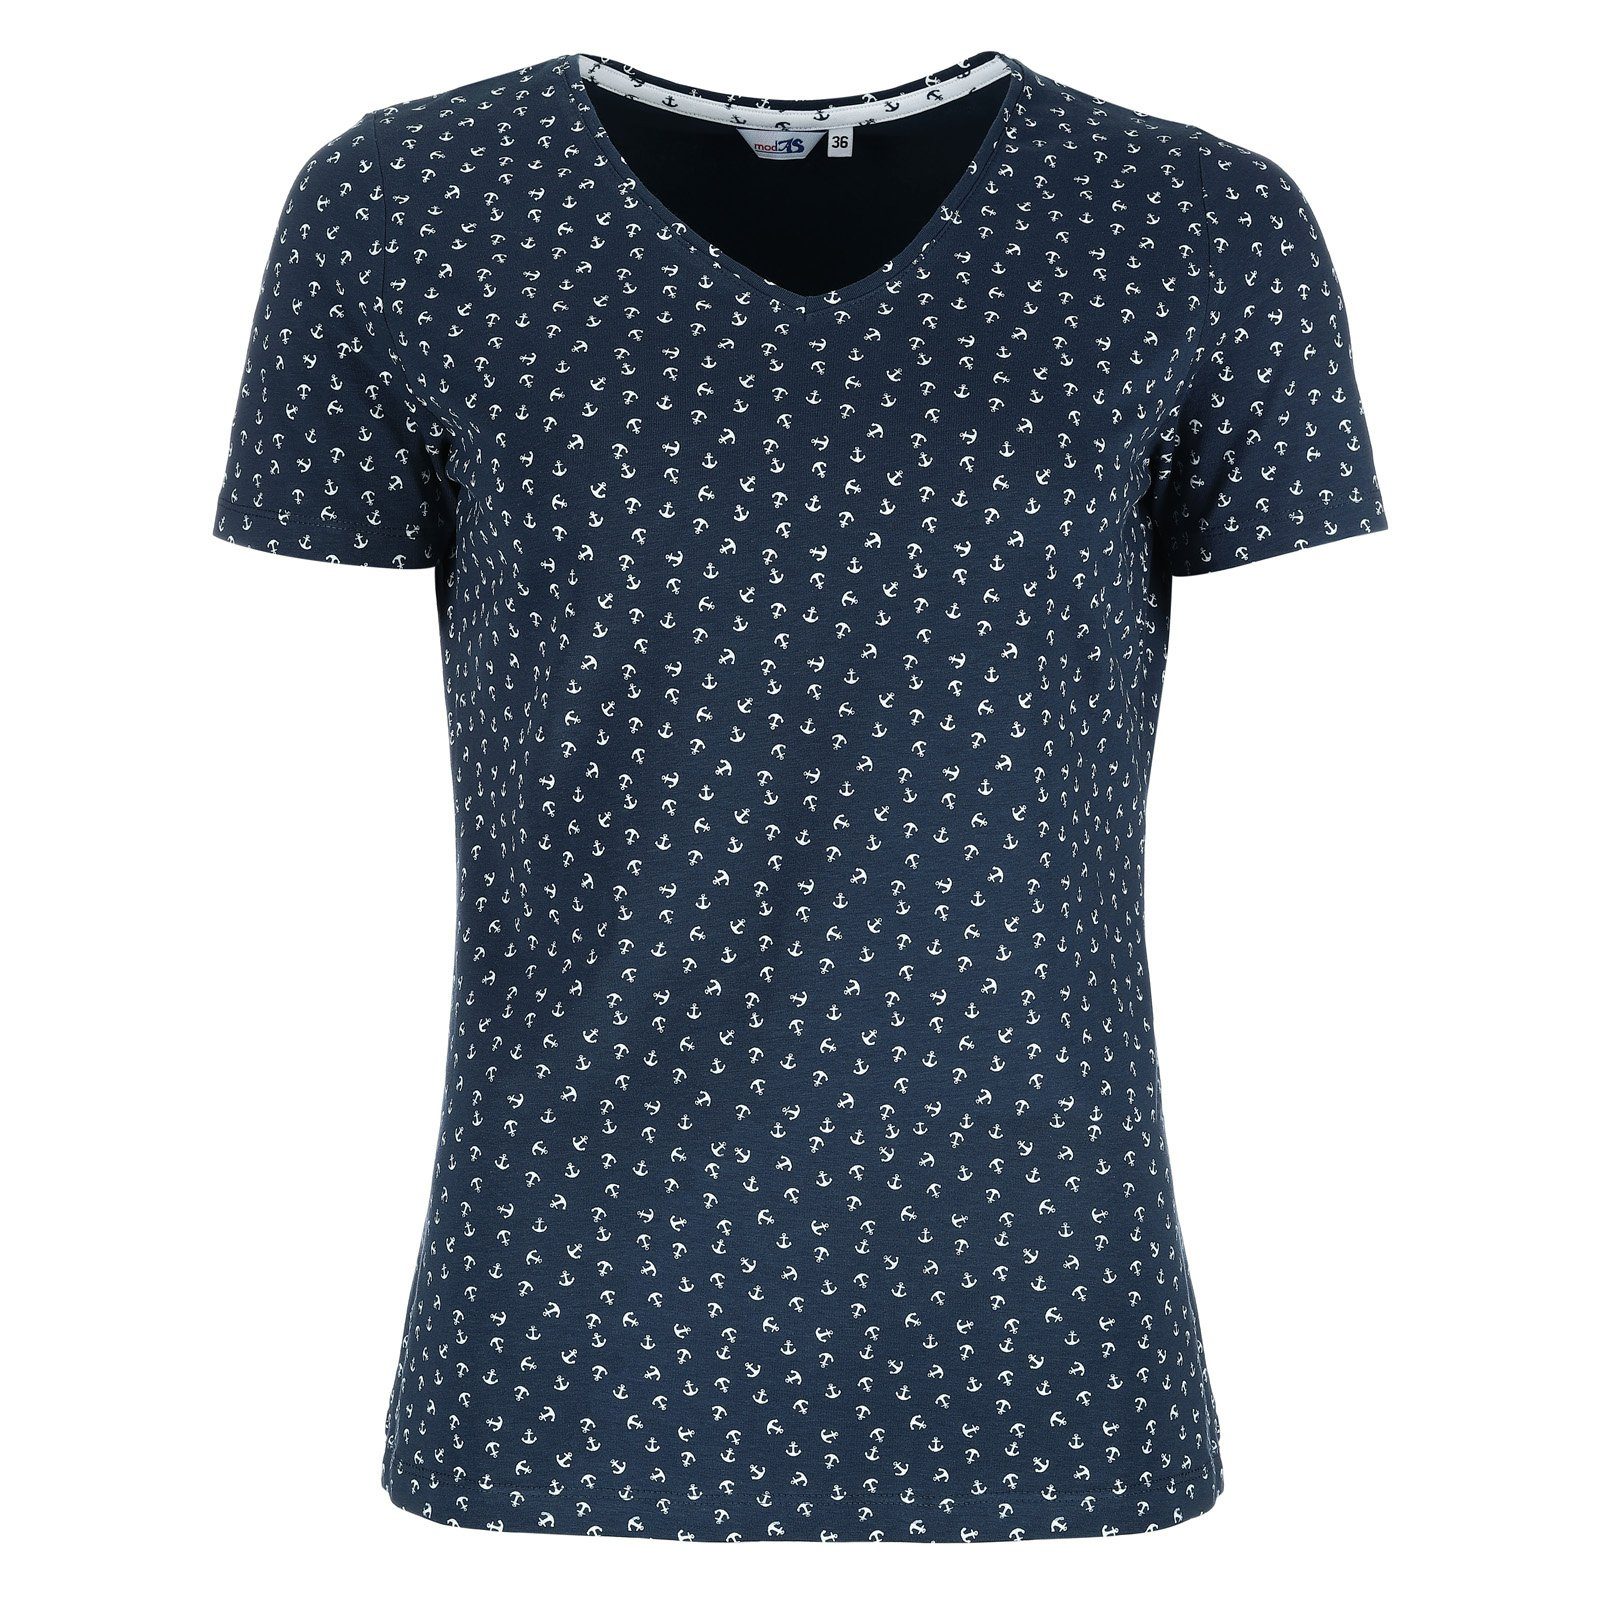 modAS Kurzarmshirt Damen T-Shirt Maritim mit Anker-Print und V-Ausschnitt